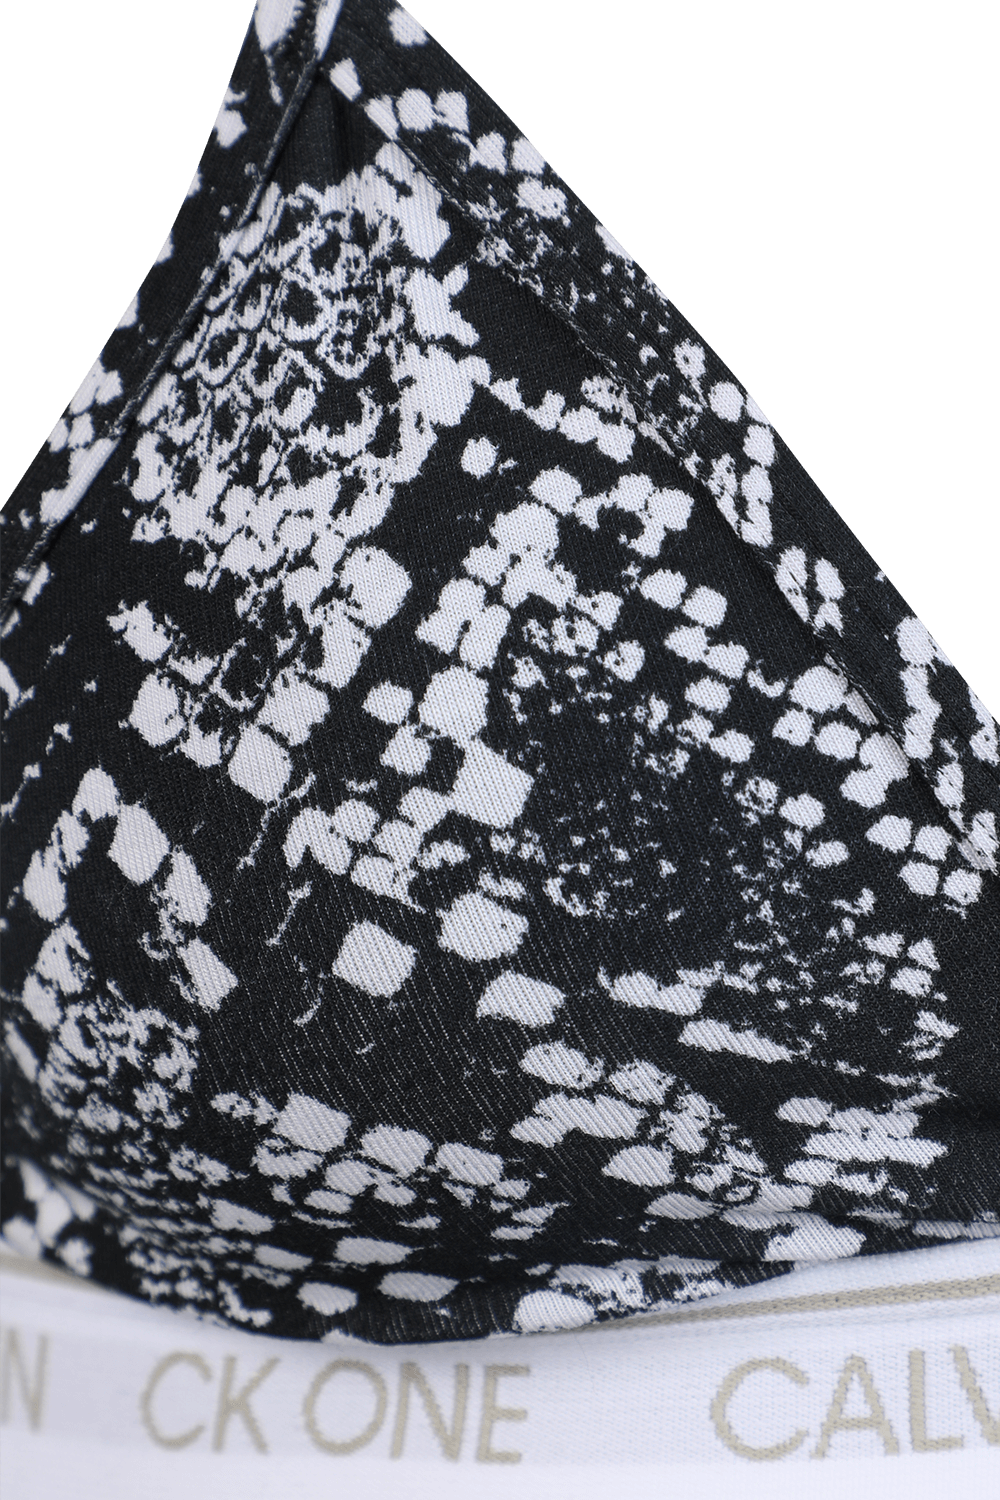 חזיית משולשים עם הדפס נחש בגווני שחור ולבן CALVIN KLEIN